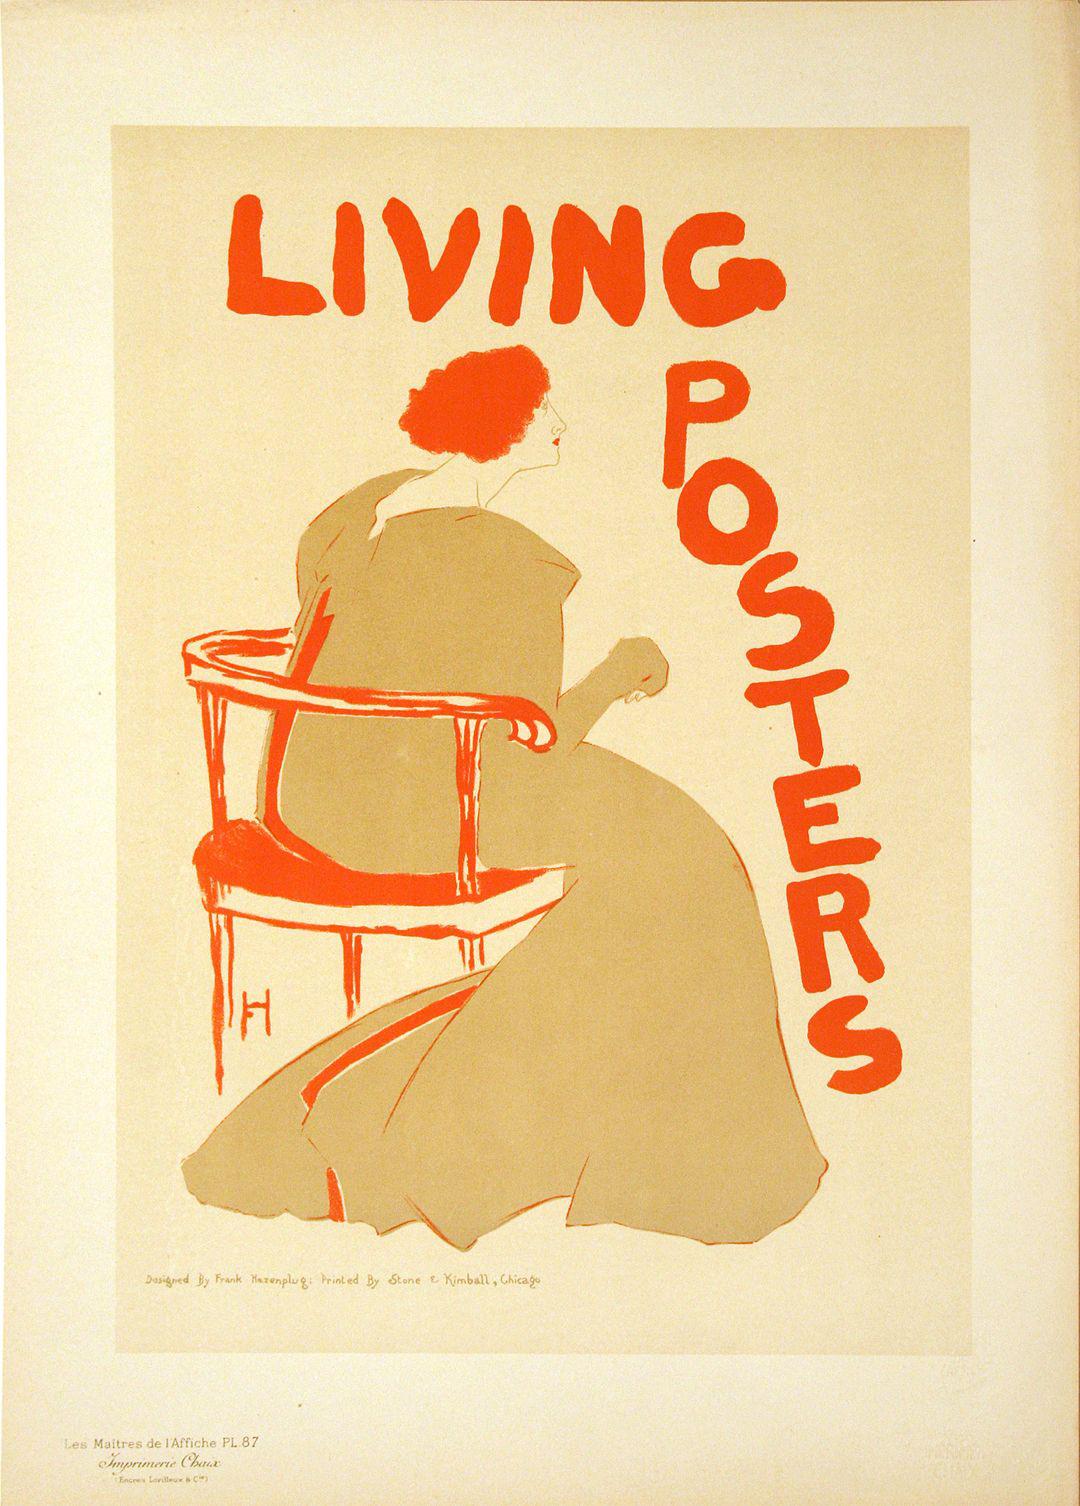 Original Maitres De L'Affiche - Pl 87 Living Posters by Frank Hazenplug